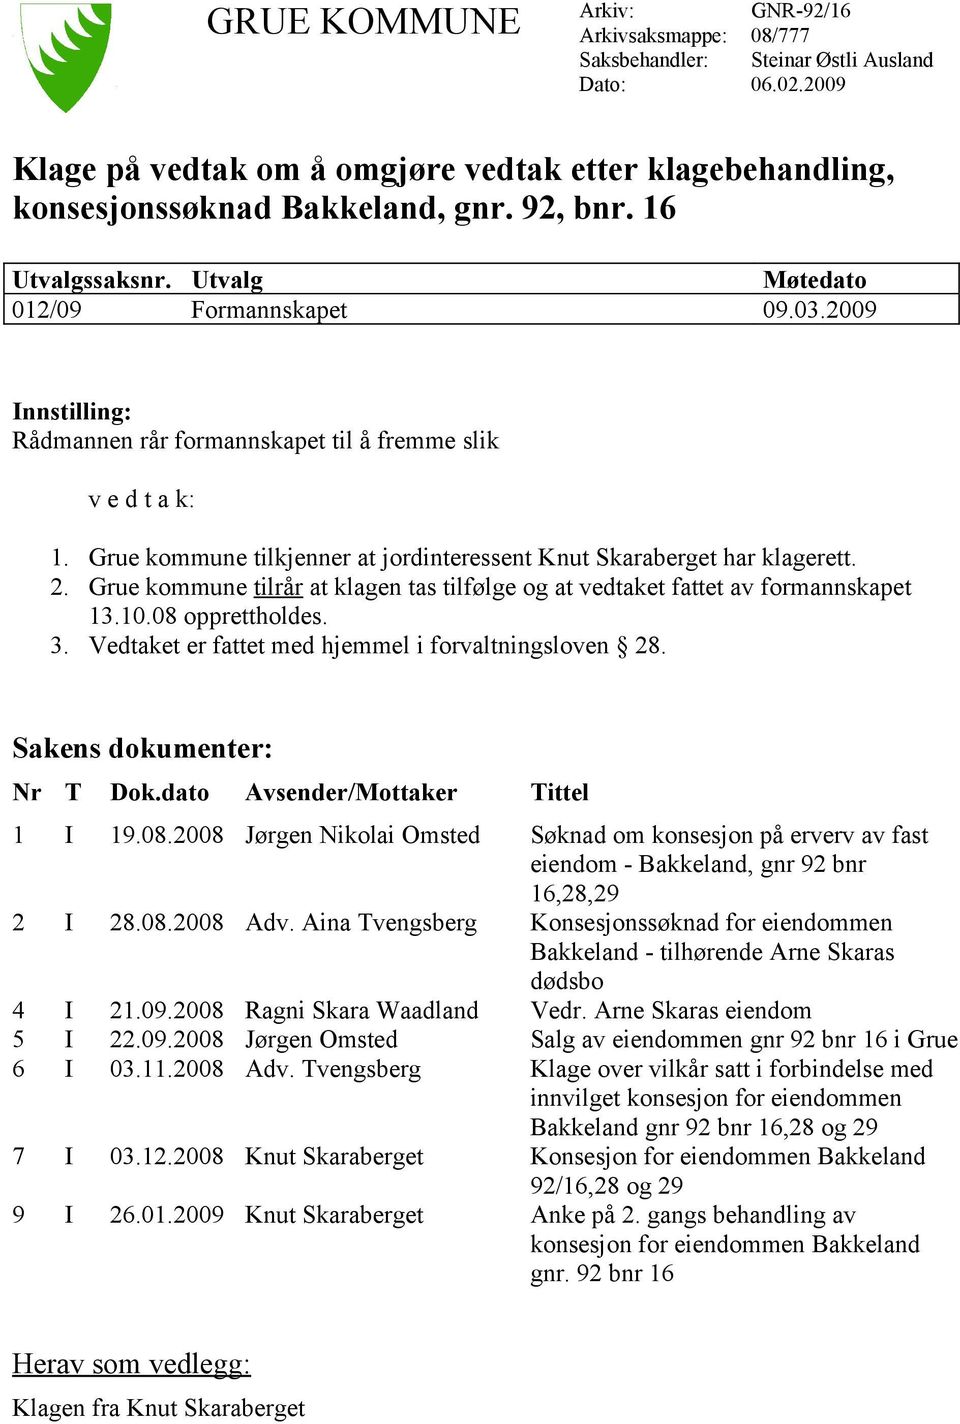 Grue kommune tilkjenner at jordinteressent Knut Skaraberget har klagerett. 2. Grue kommune tilrår at klagen tas tilfølge og at vedtaket fattet av formannskapet 13.10.08 opprettholdes. 3.